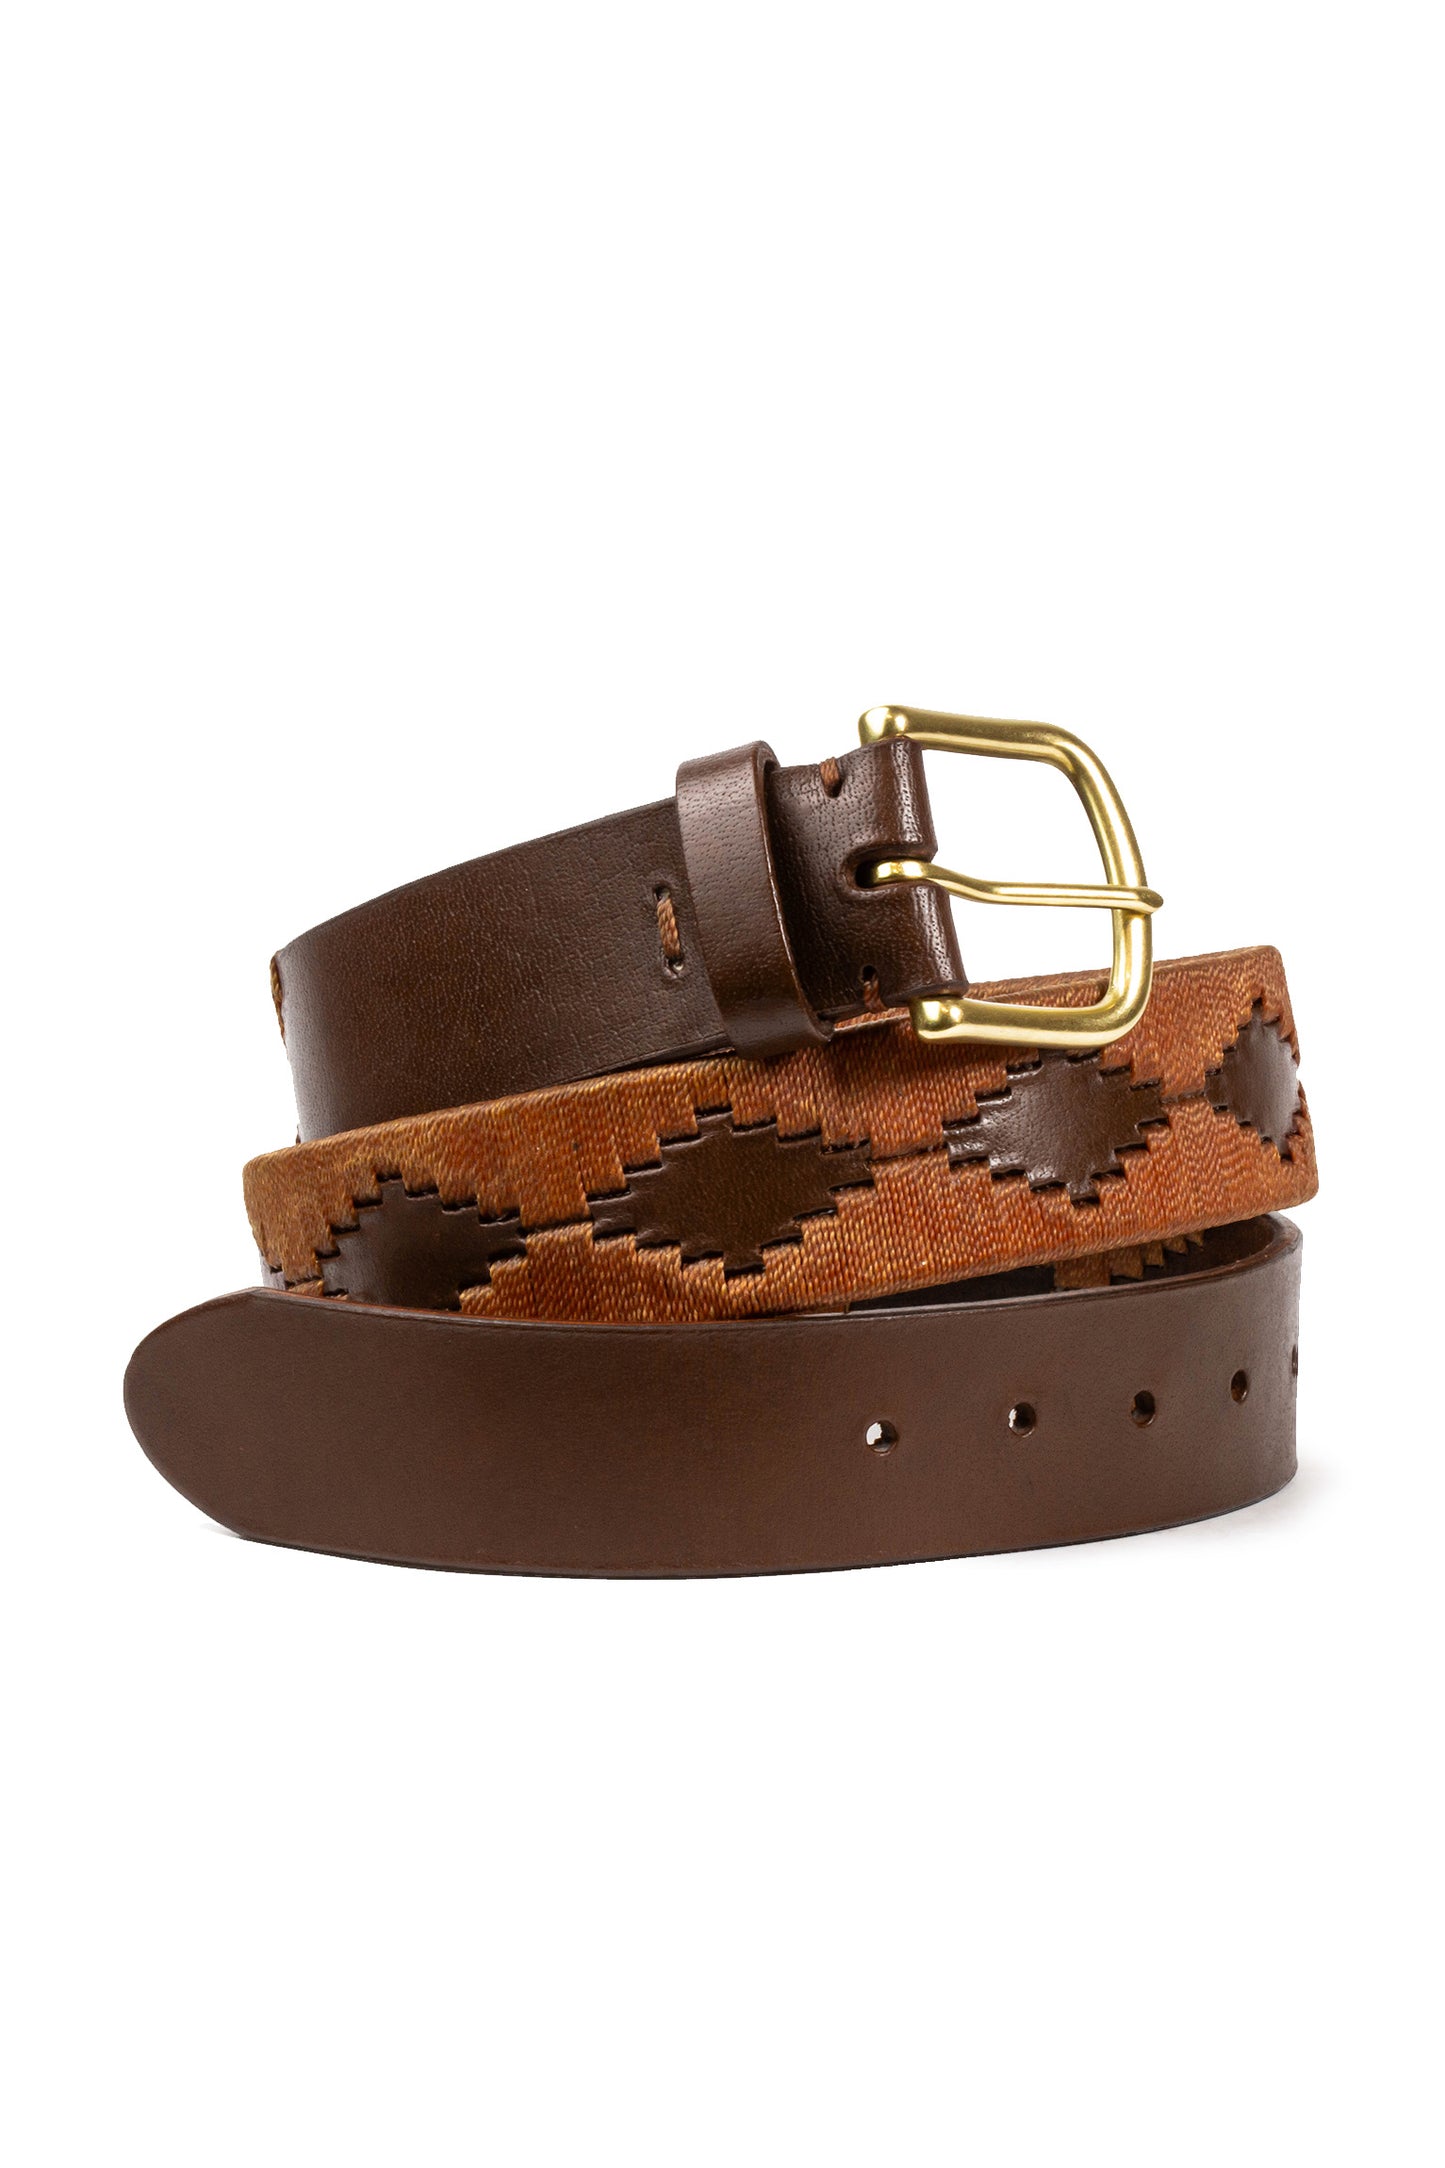 Caramel Leather Handcrafted Belt